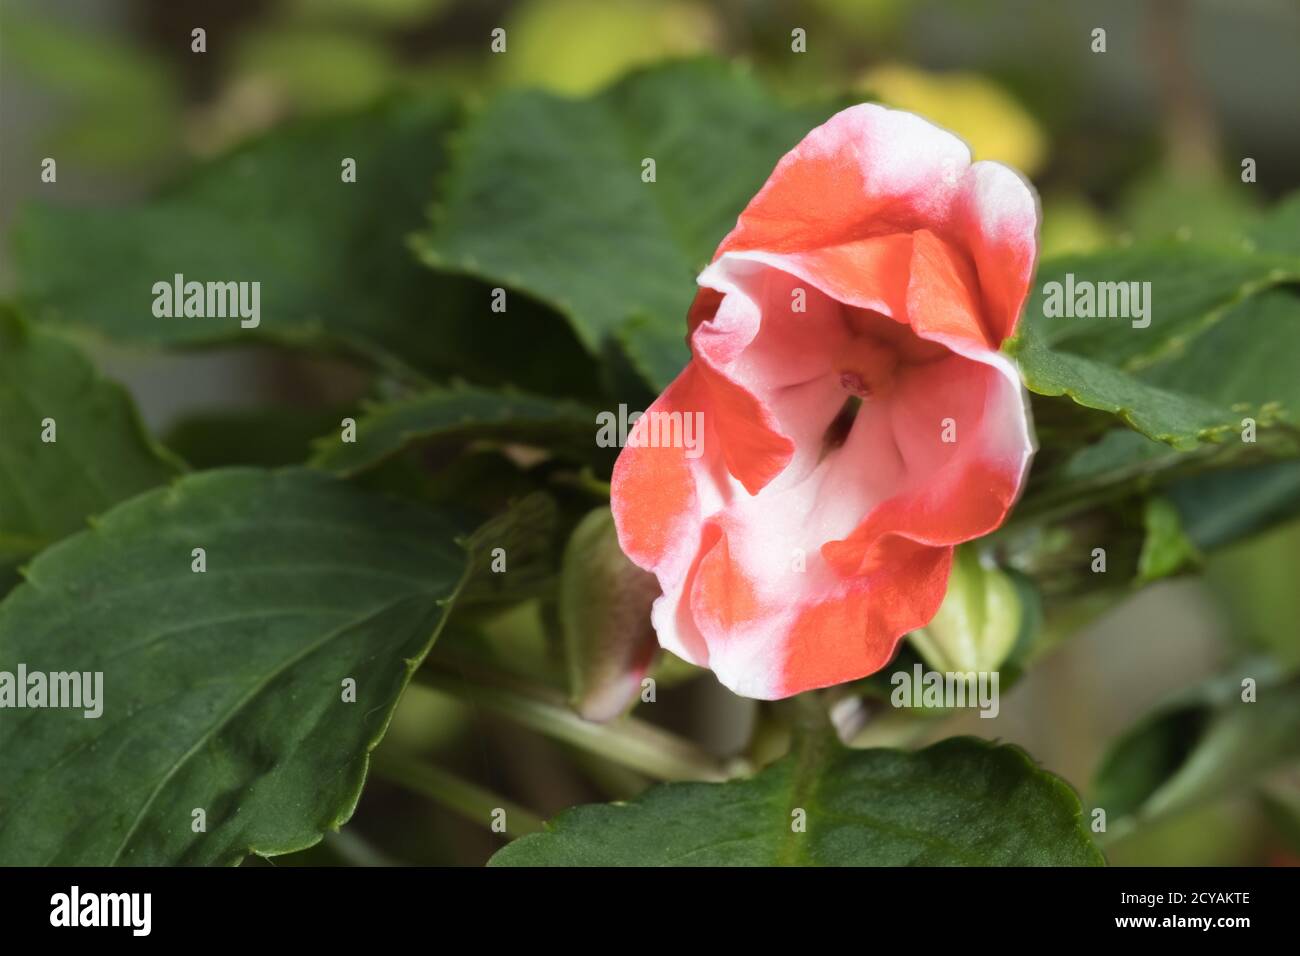 Una planta de Impatiens Impatiens walleriana también llamada loza ocupada, balsam, o sultana, con flor roja y blanca sola. Foto de stock